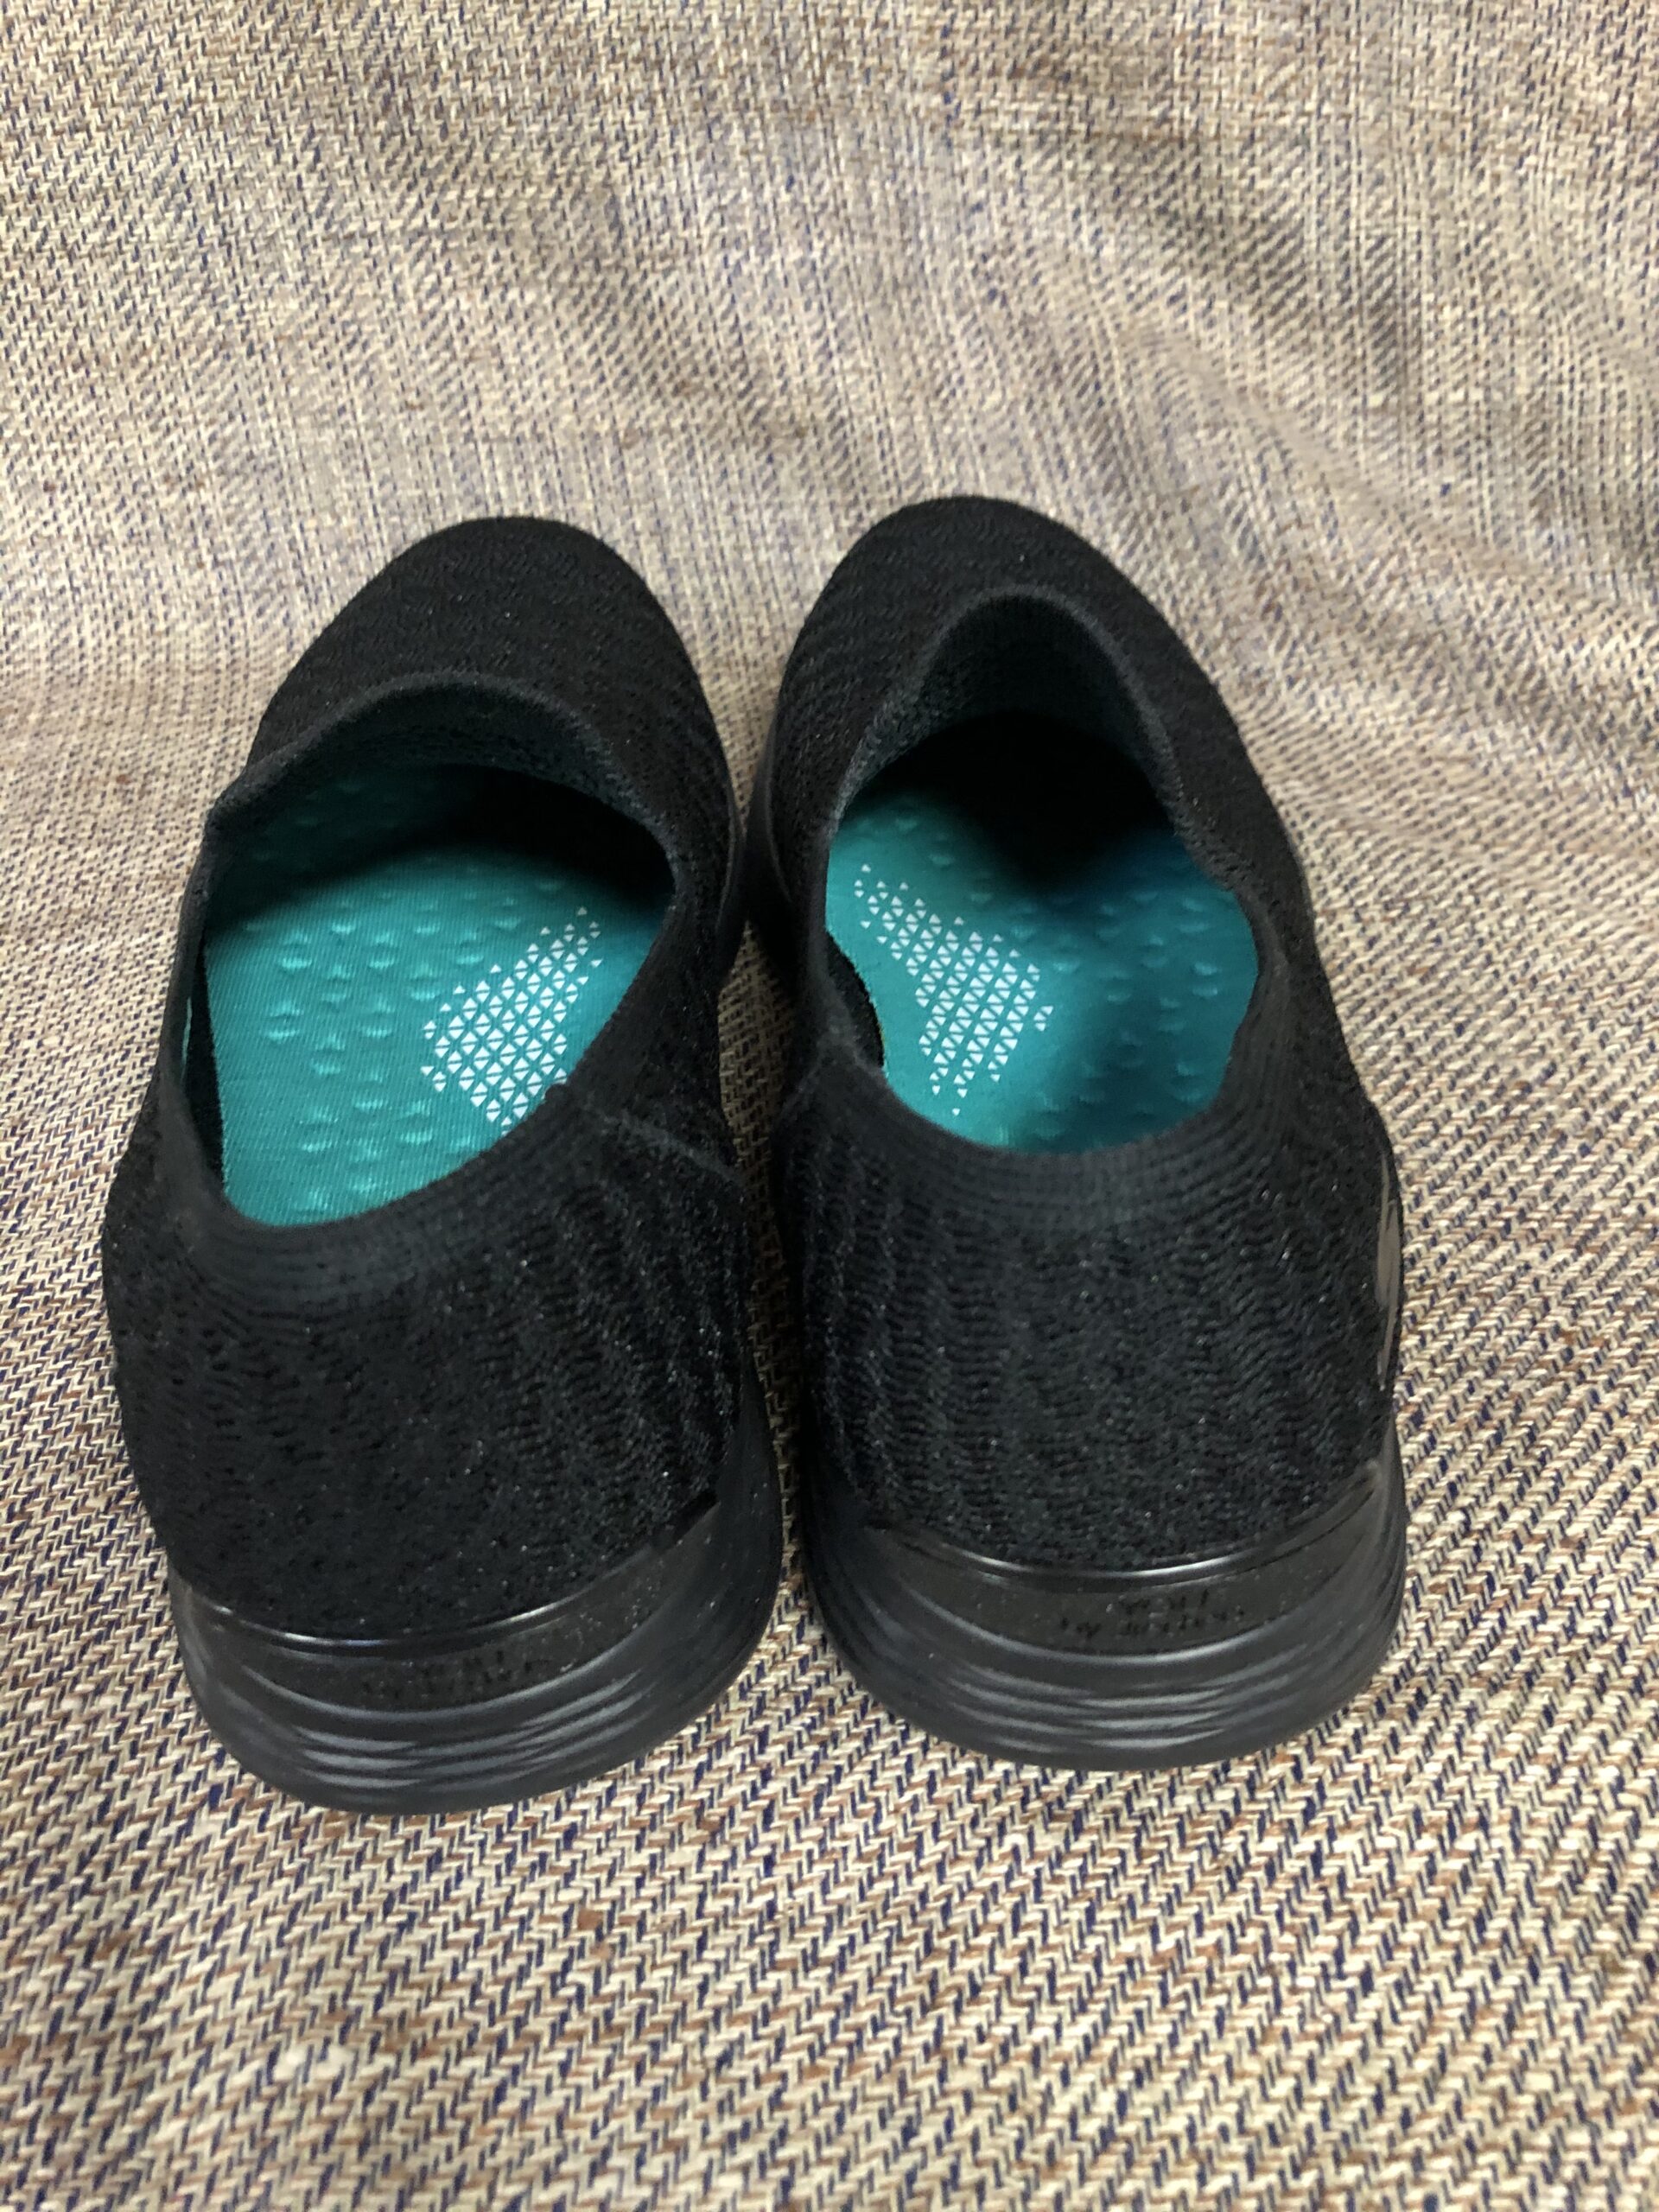 Skechers Goga Mat Shoes, Size 8 – Assistance League of Tucson